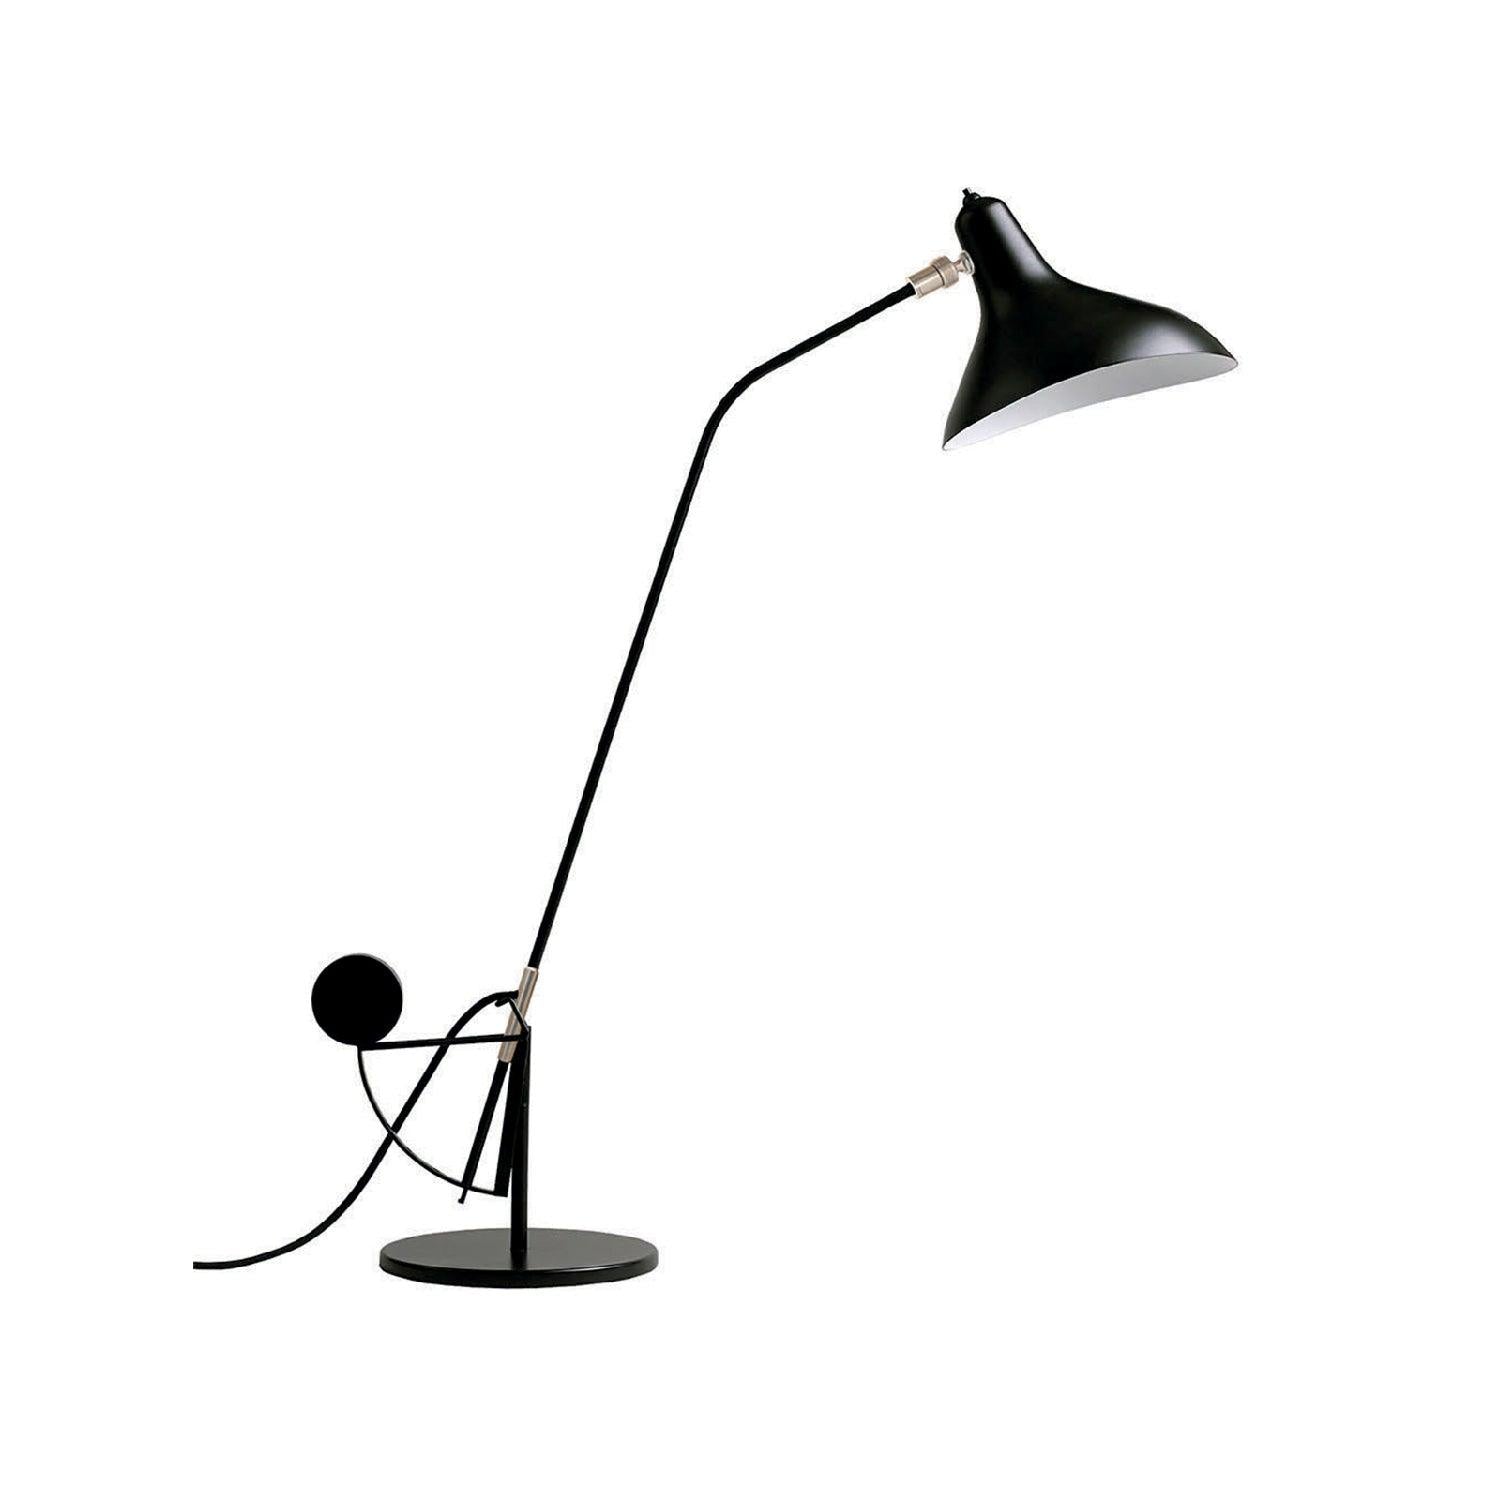 Image de : Lampe Mantis BS3 présenté par 37+ Design.